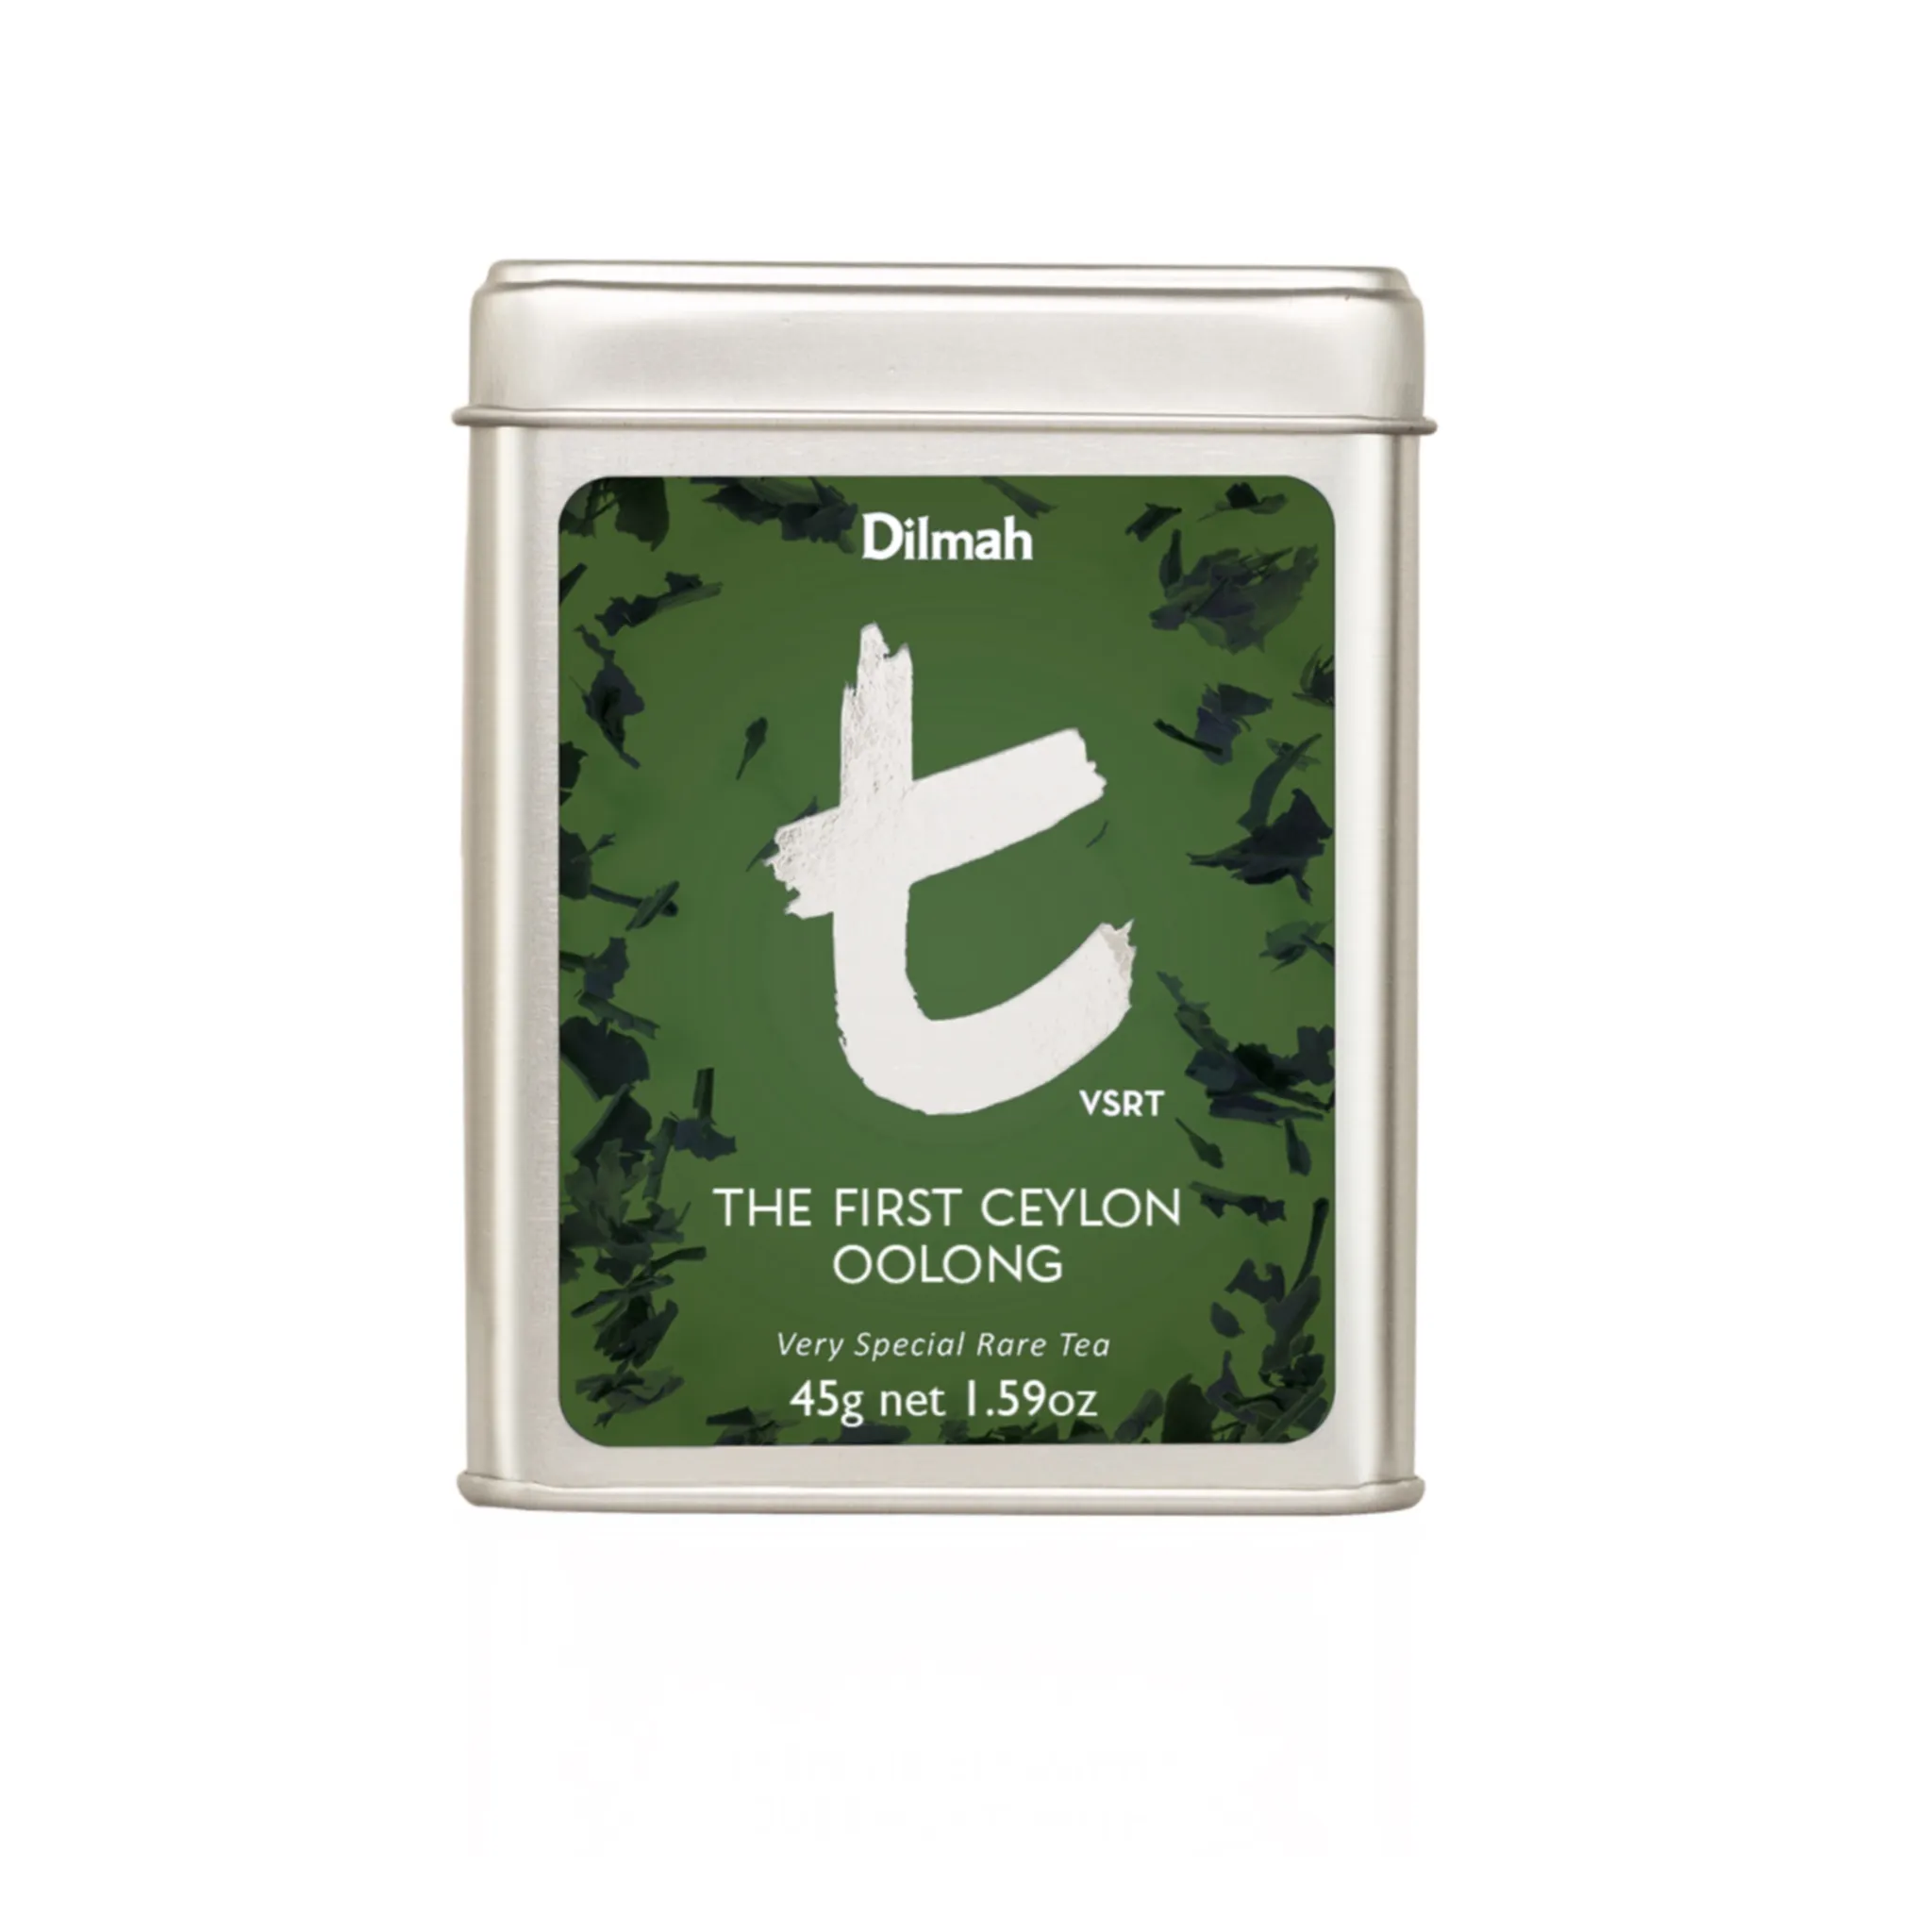 Tin of loose leaf Ceylon Oolong tea